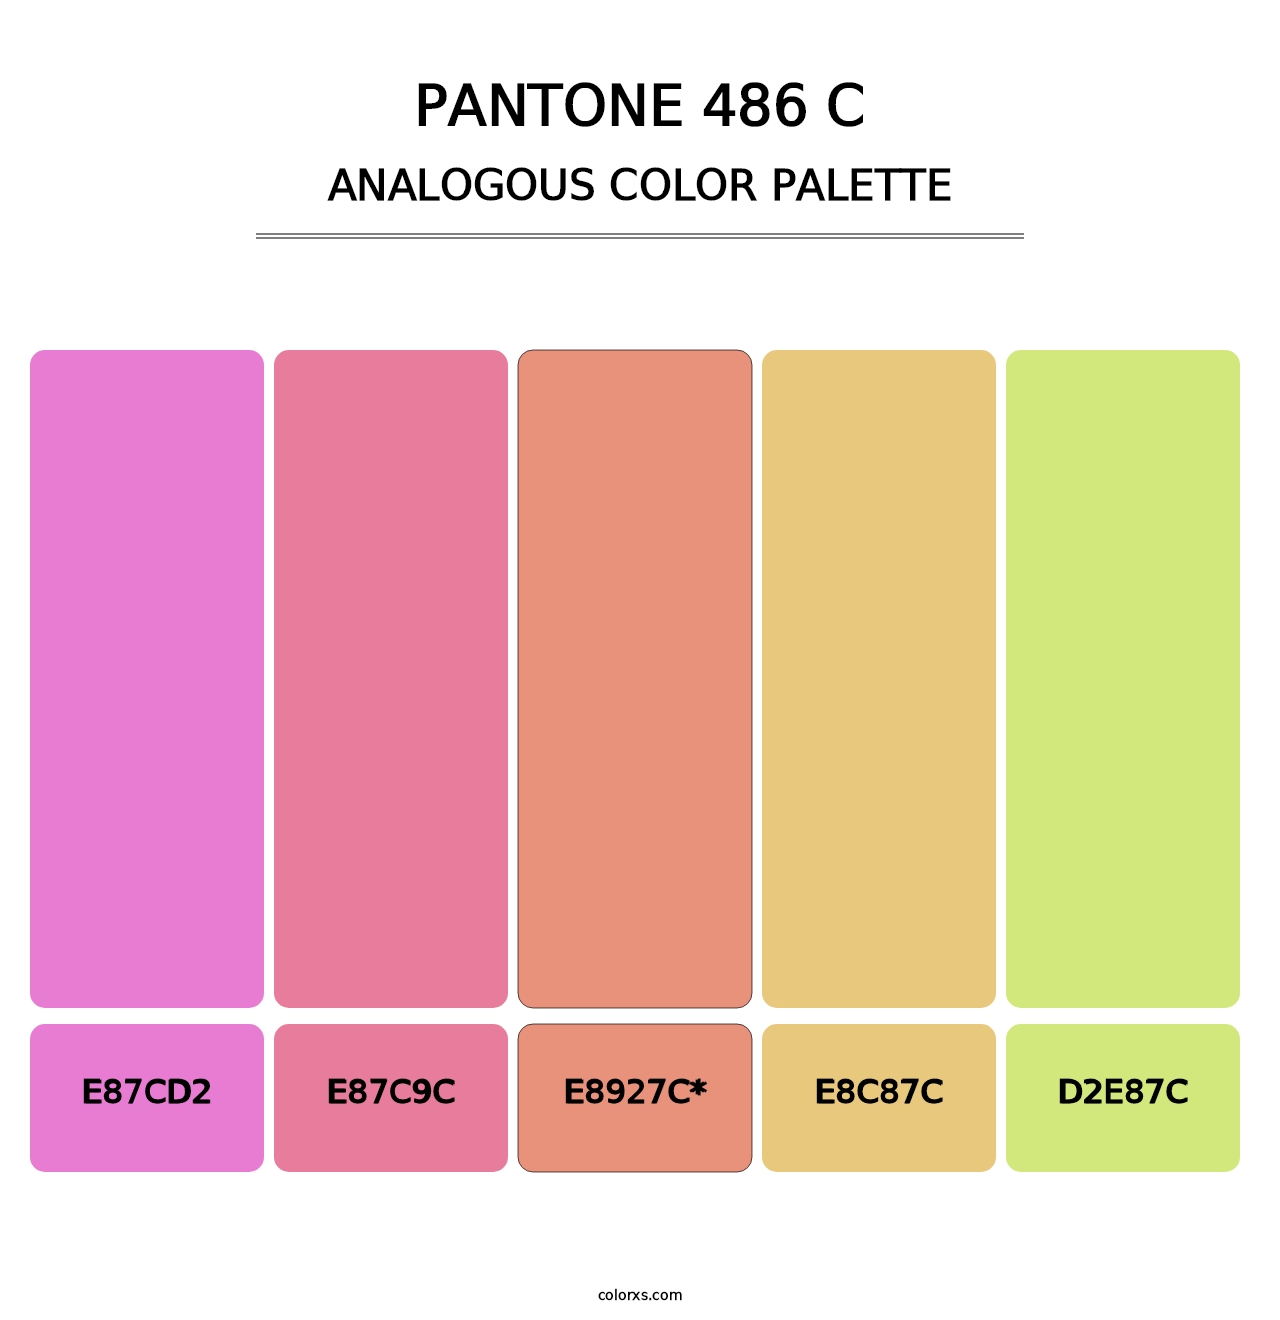 PANTONE 486 C - Analogous Color Palette